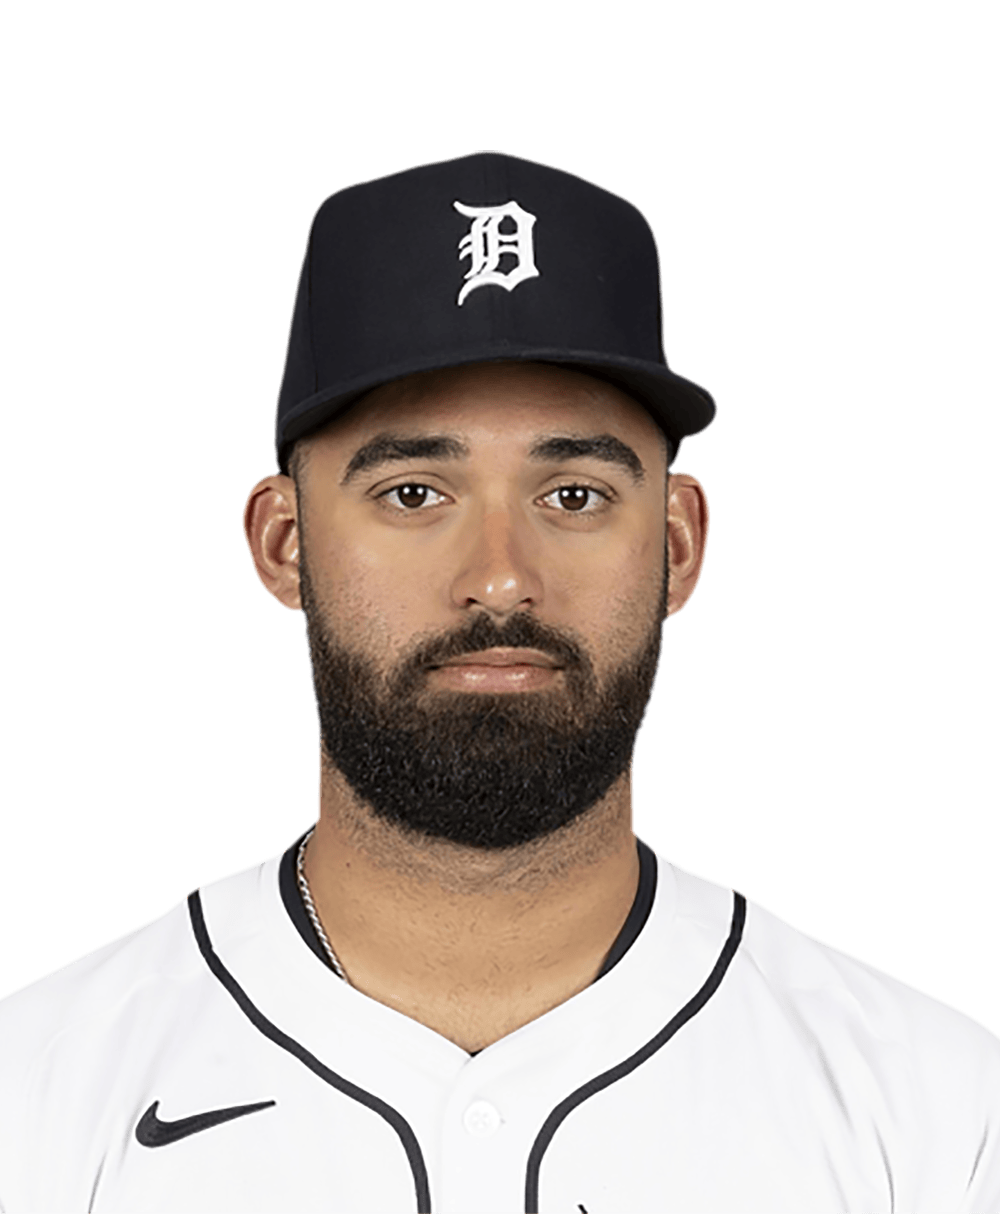 Riley Greene - MLB News, Rumors, & Updates